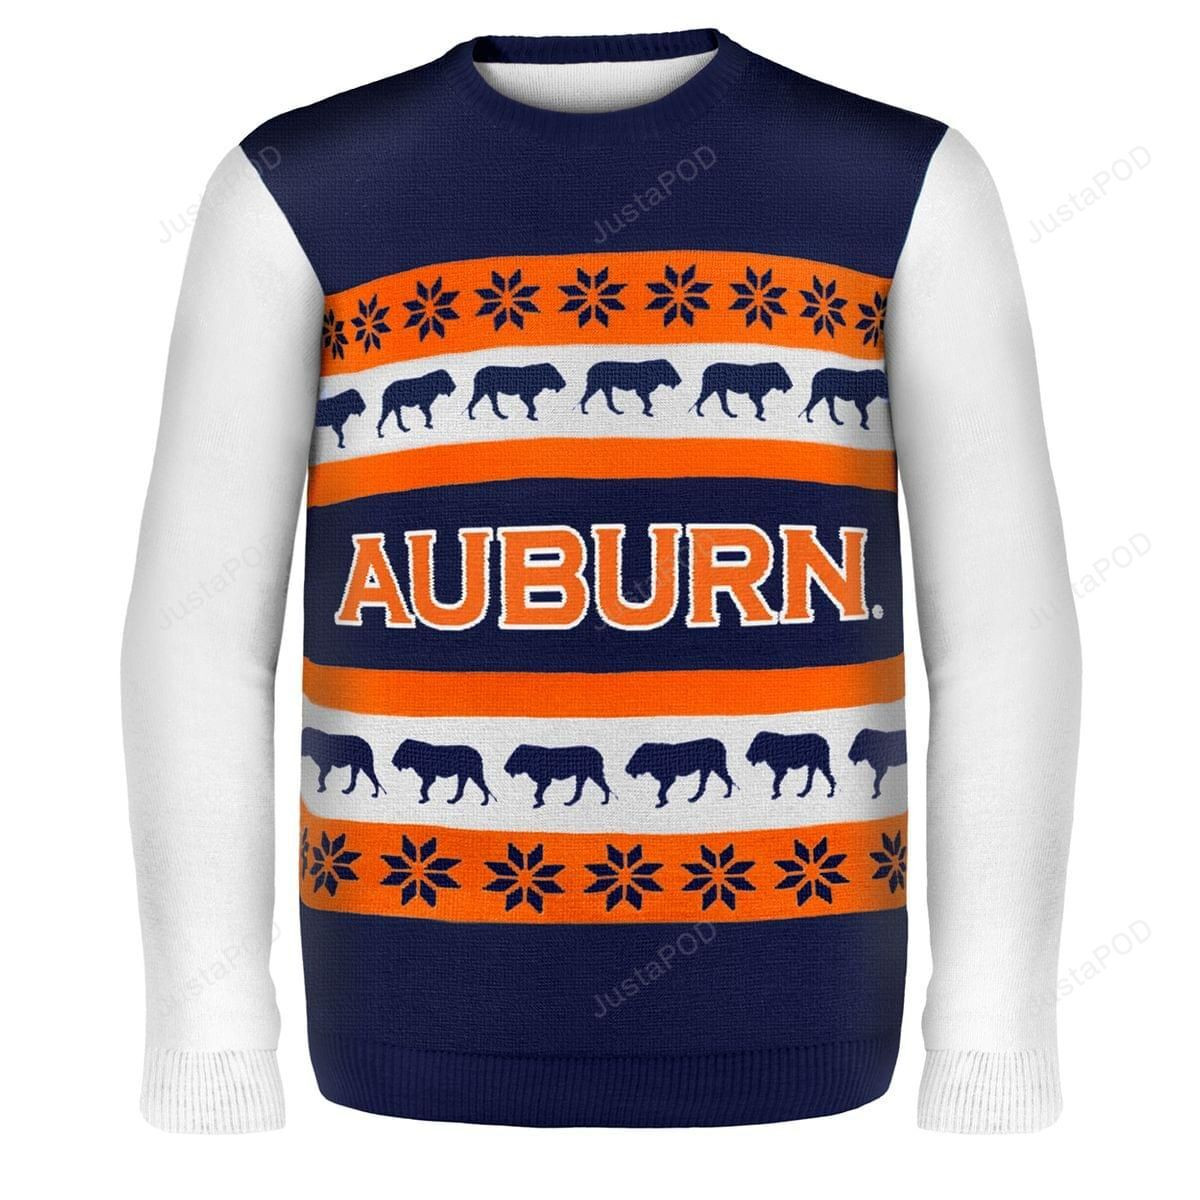 Auburn Wordmark NCAA Ugly Christmas Sweater All Over Print Sweatshirt